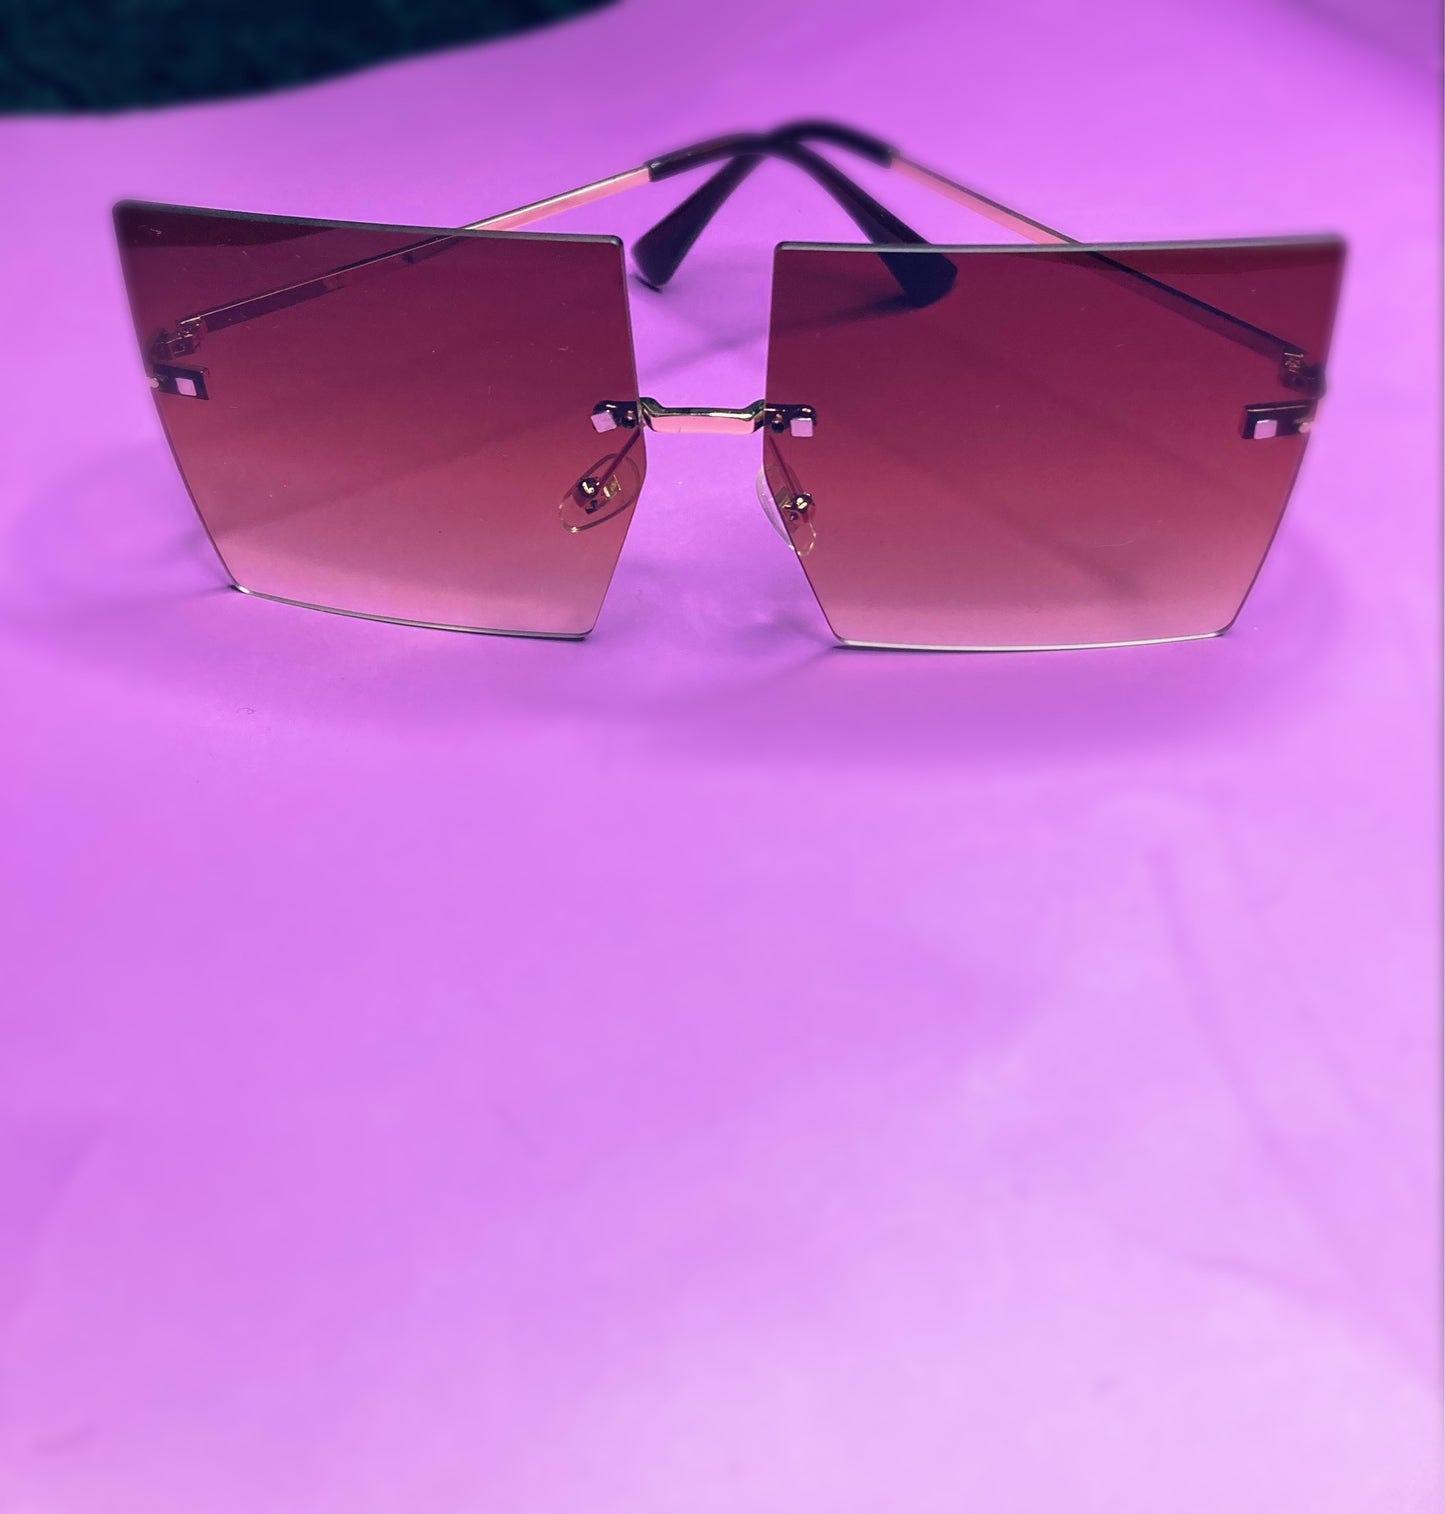 miami sunglasses cute sunglasses for women luxury sunglasses for women quality sunglasses light sunglasses luxury shades